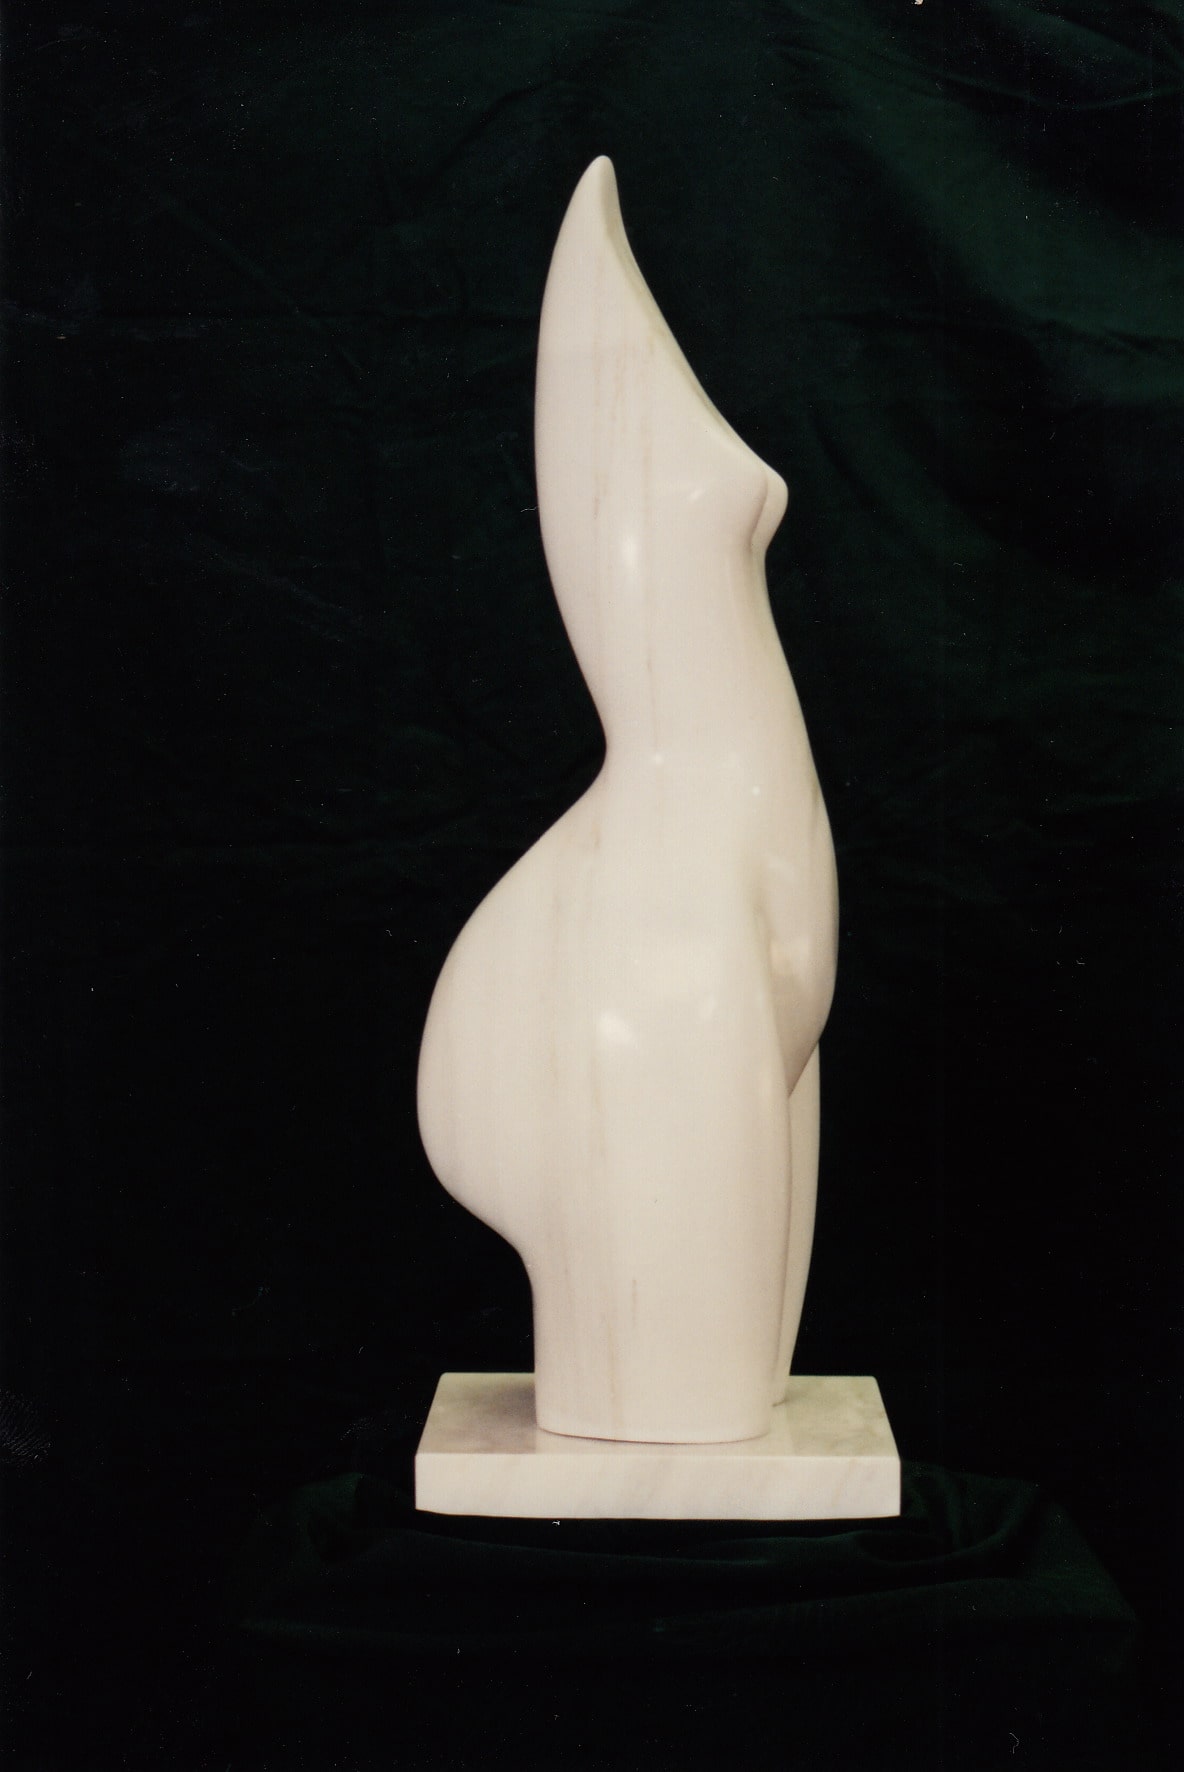 Sculpture of a human body